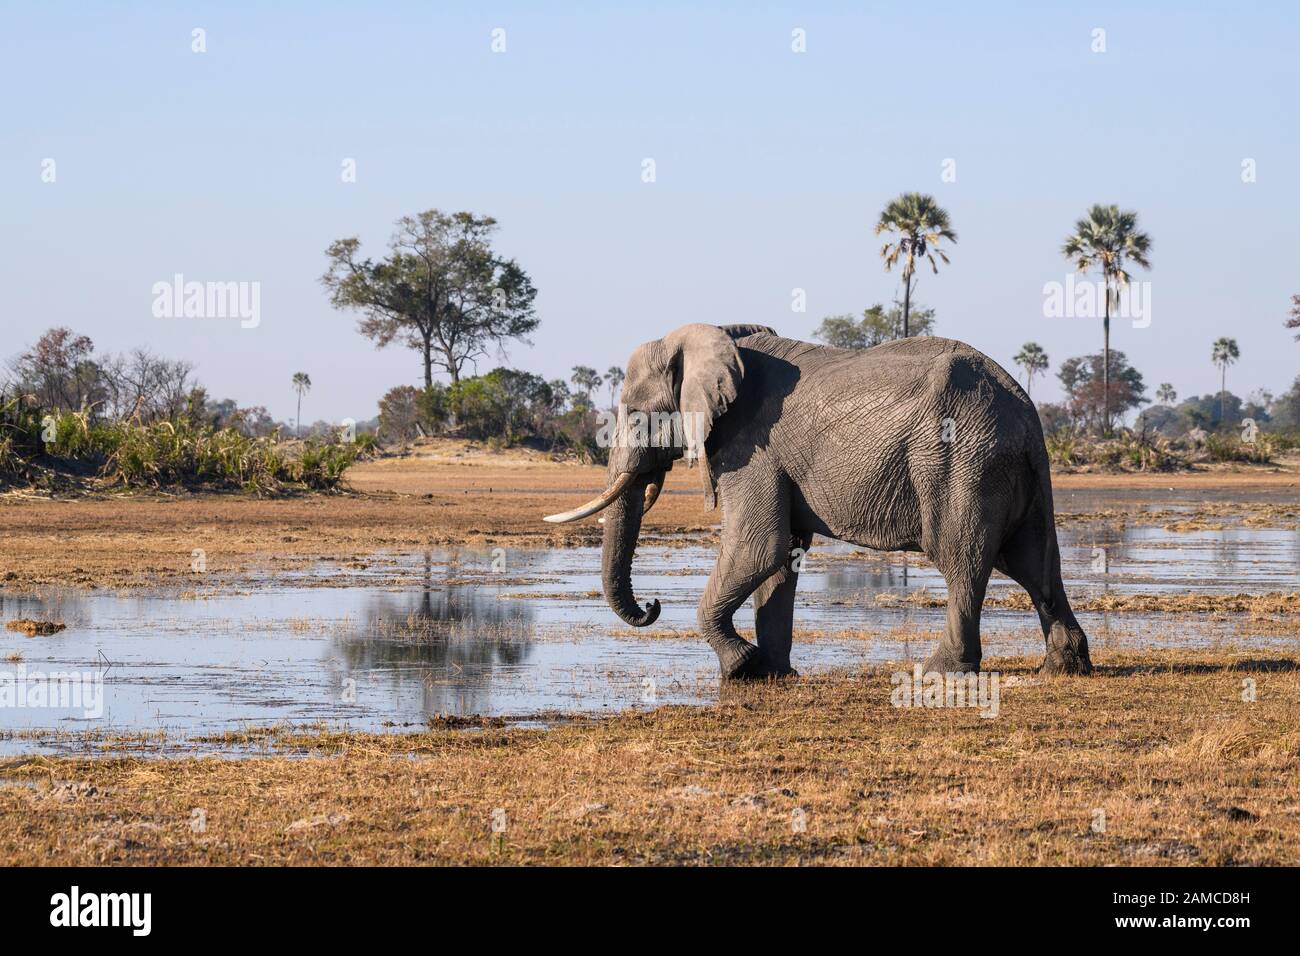 Elefante africano masculino, Loxodonta africana, usando un collar de rastreo, Macatoo, Okavango Delta, Botswana Foto de stock